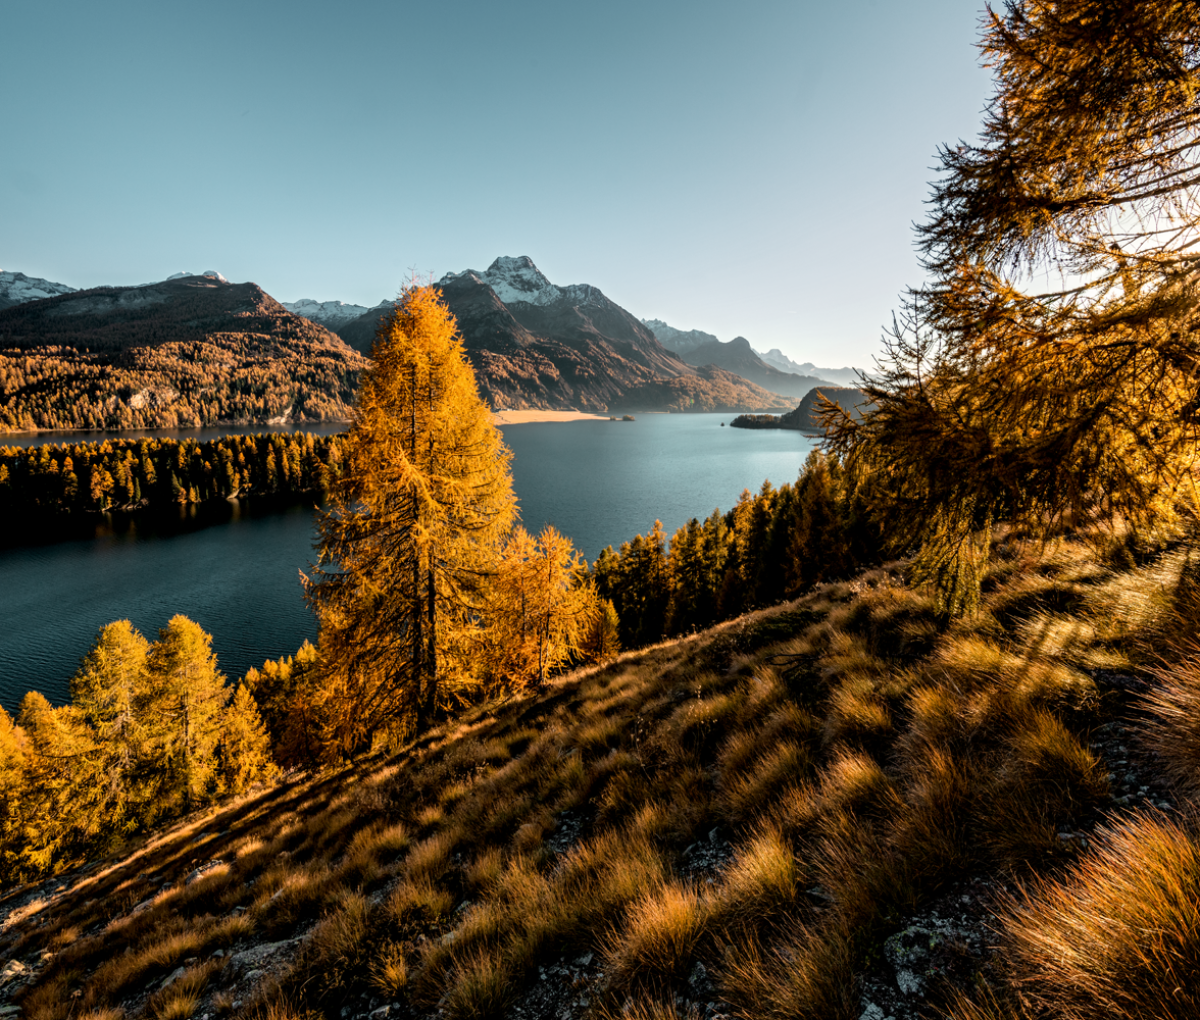 Autumn landscape in Switzerland